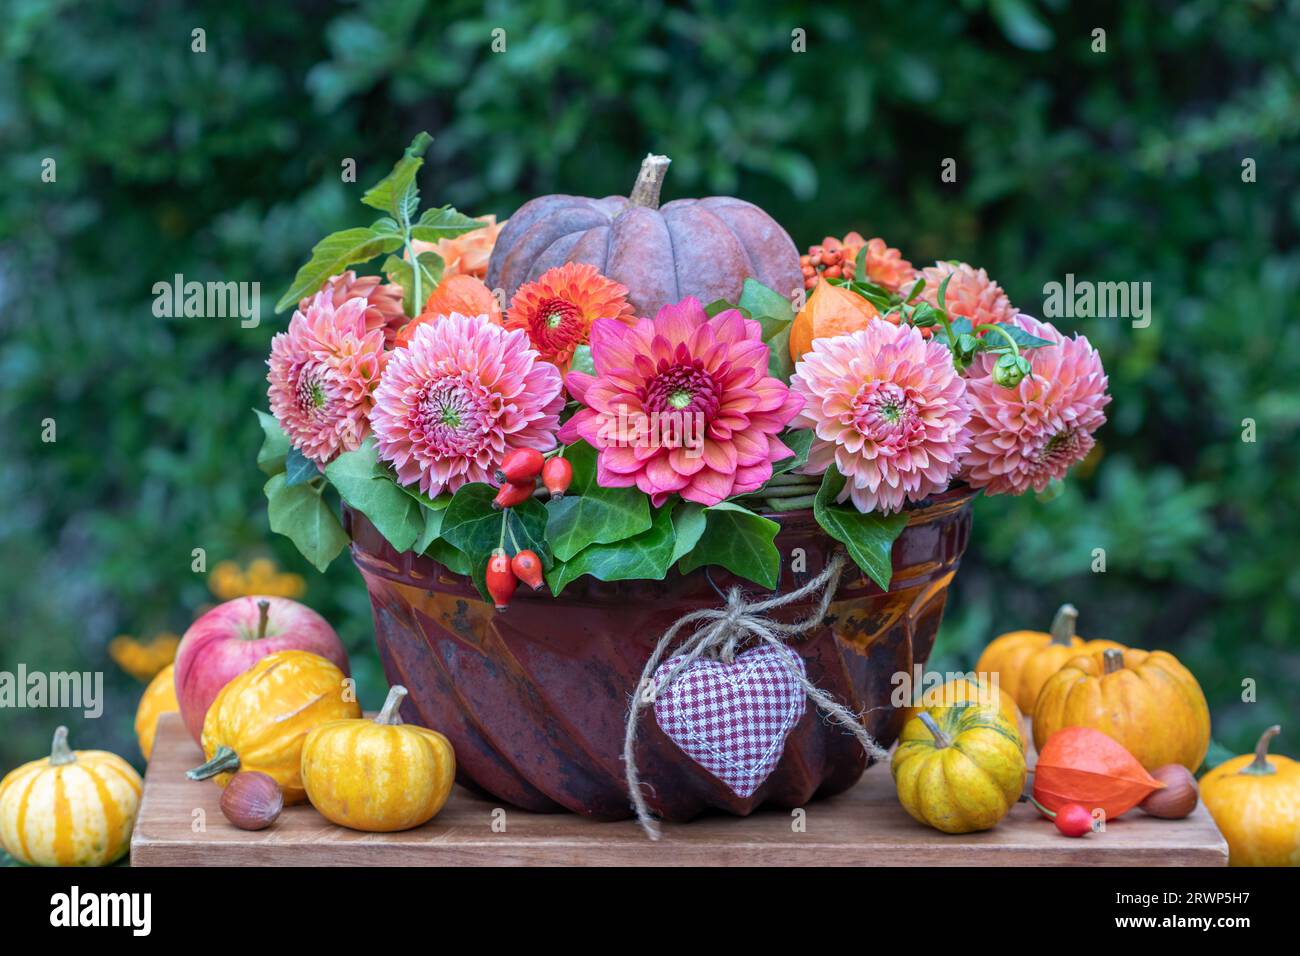 composizione floreale con dahlias arancio e zucca in un vecchio stampo di guglhupf Foto Stock